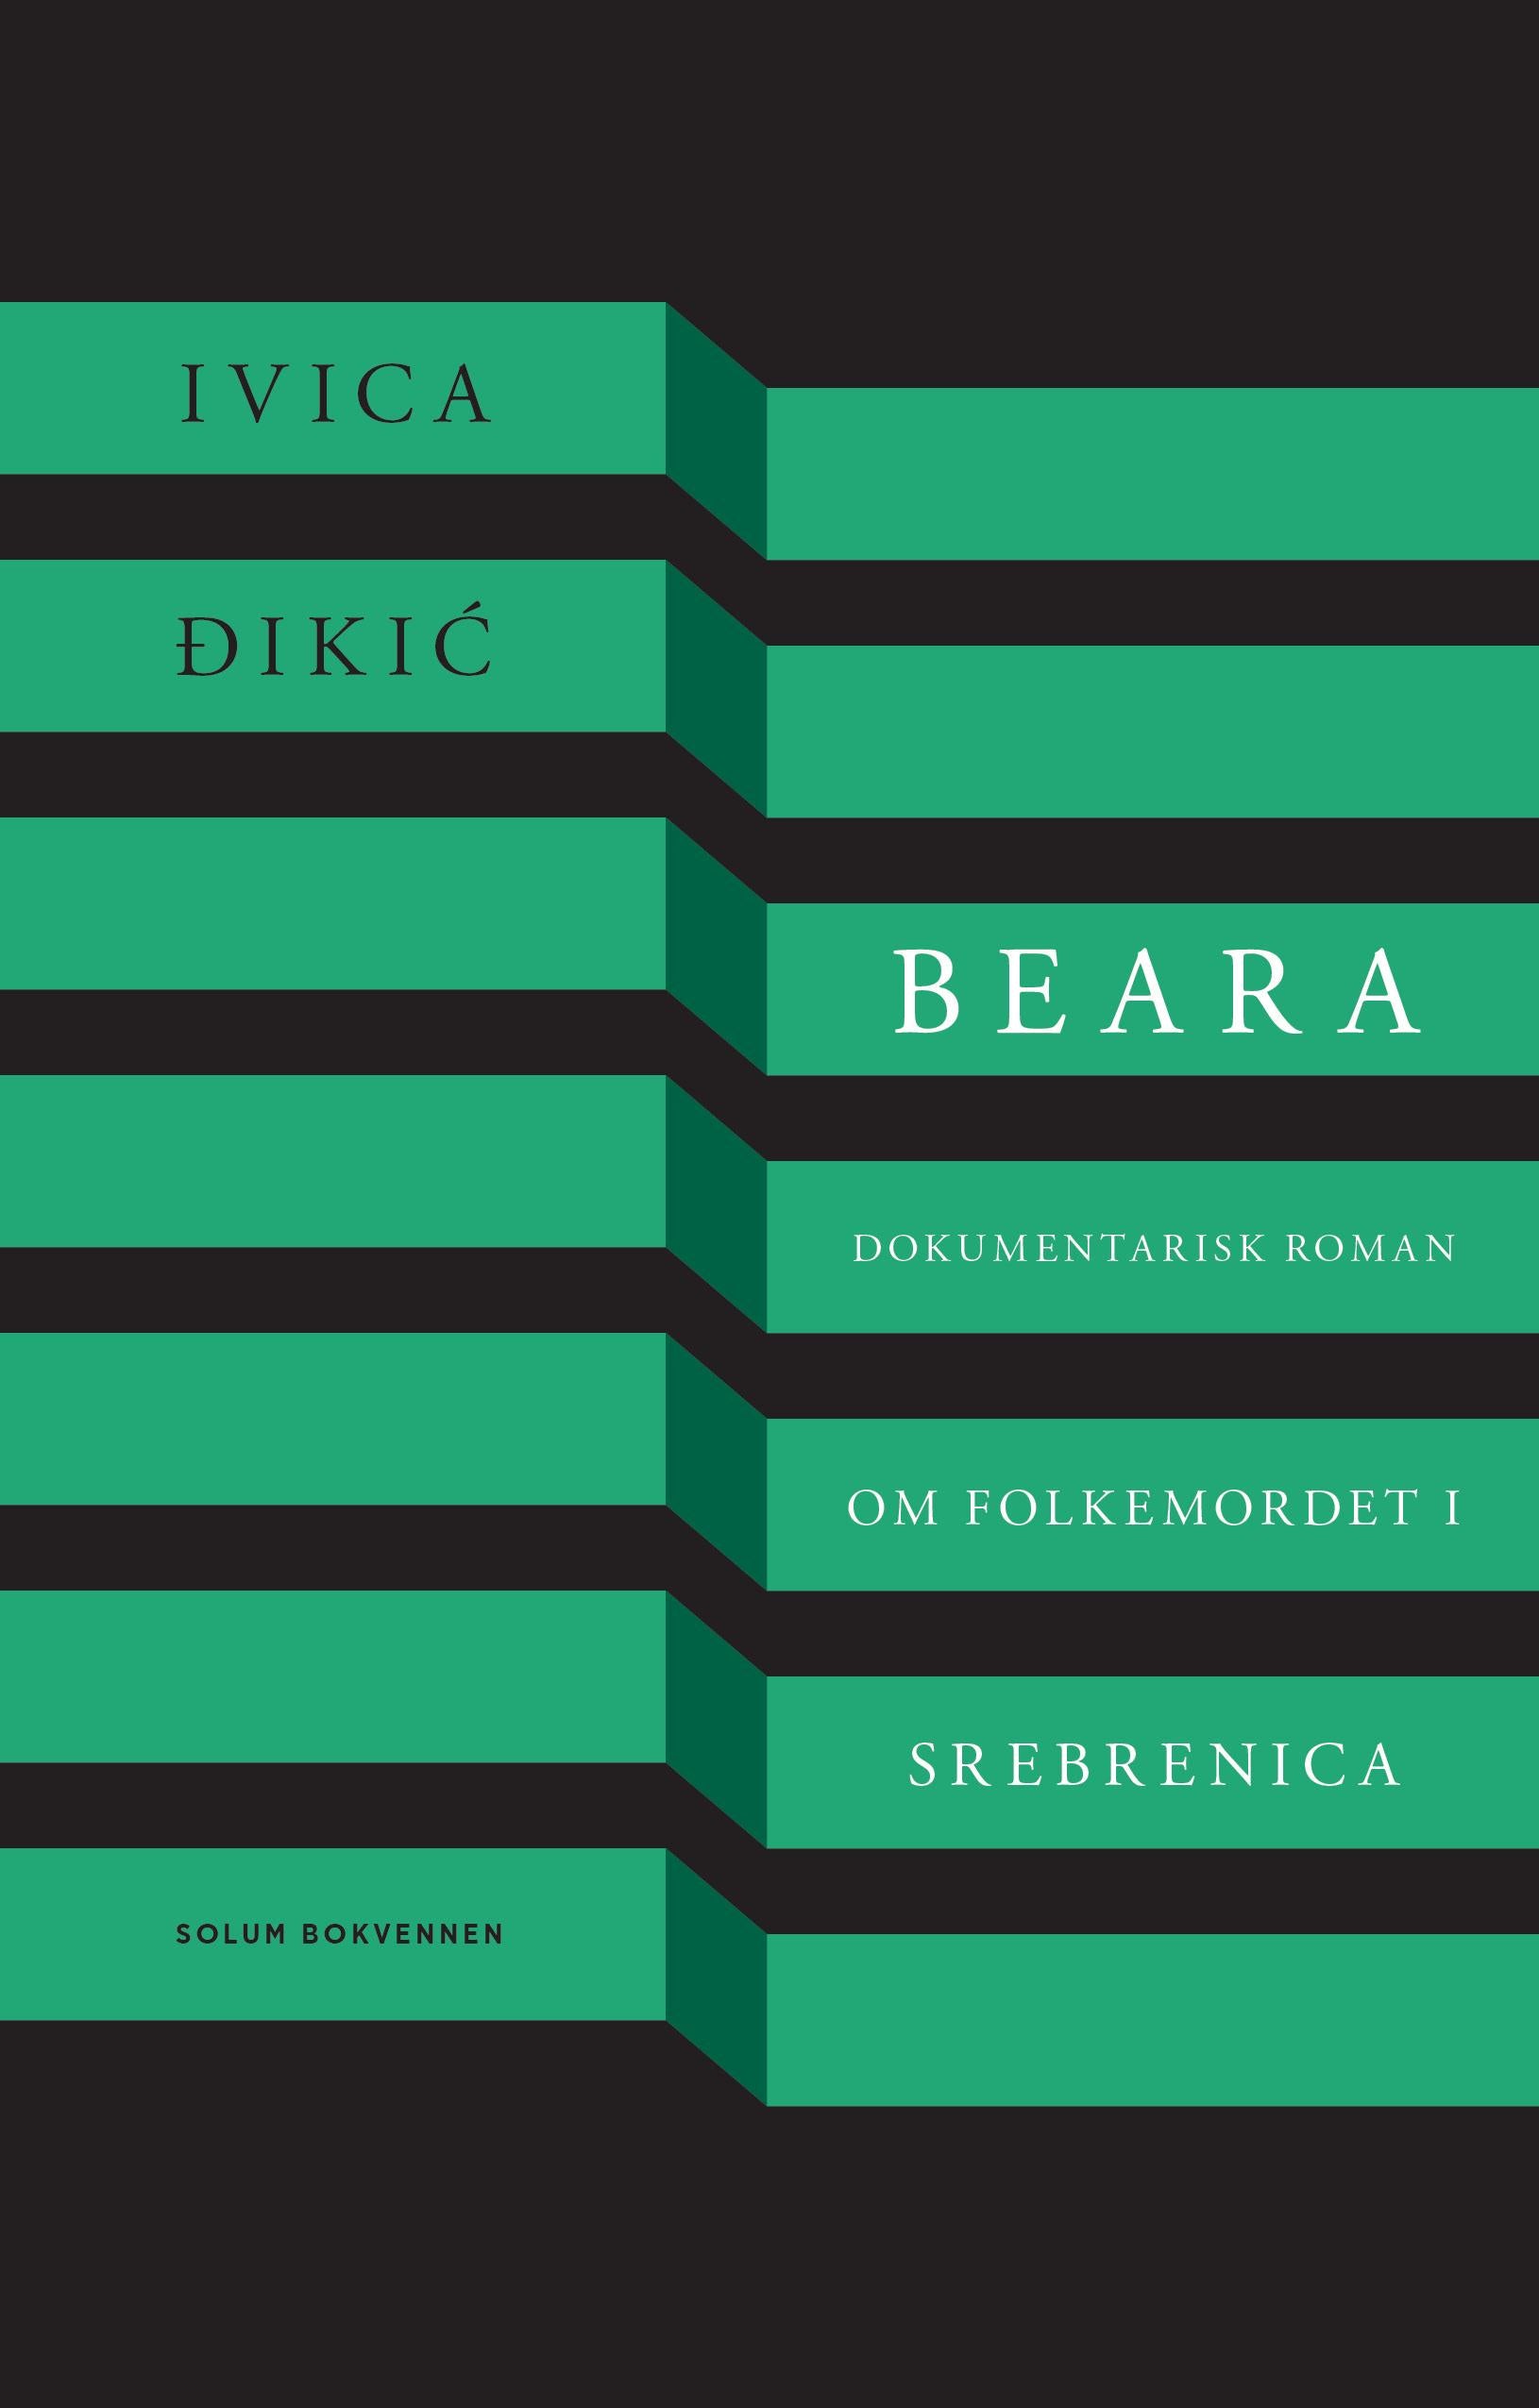 Beara: dokumentarisk roman om folkemordet i Srebrenica